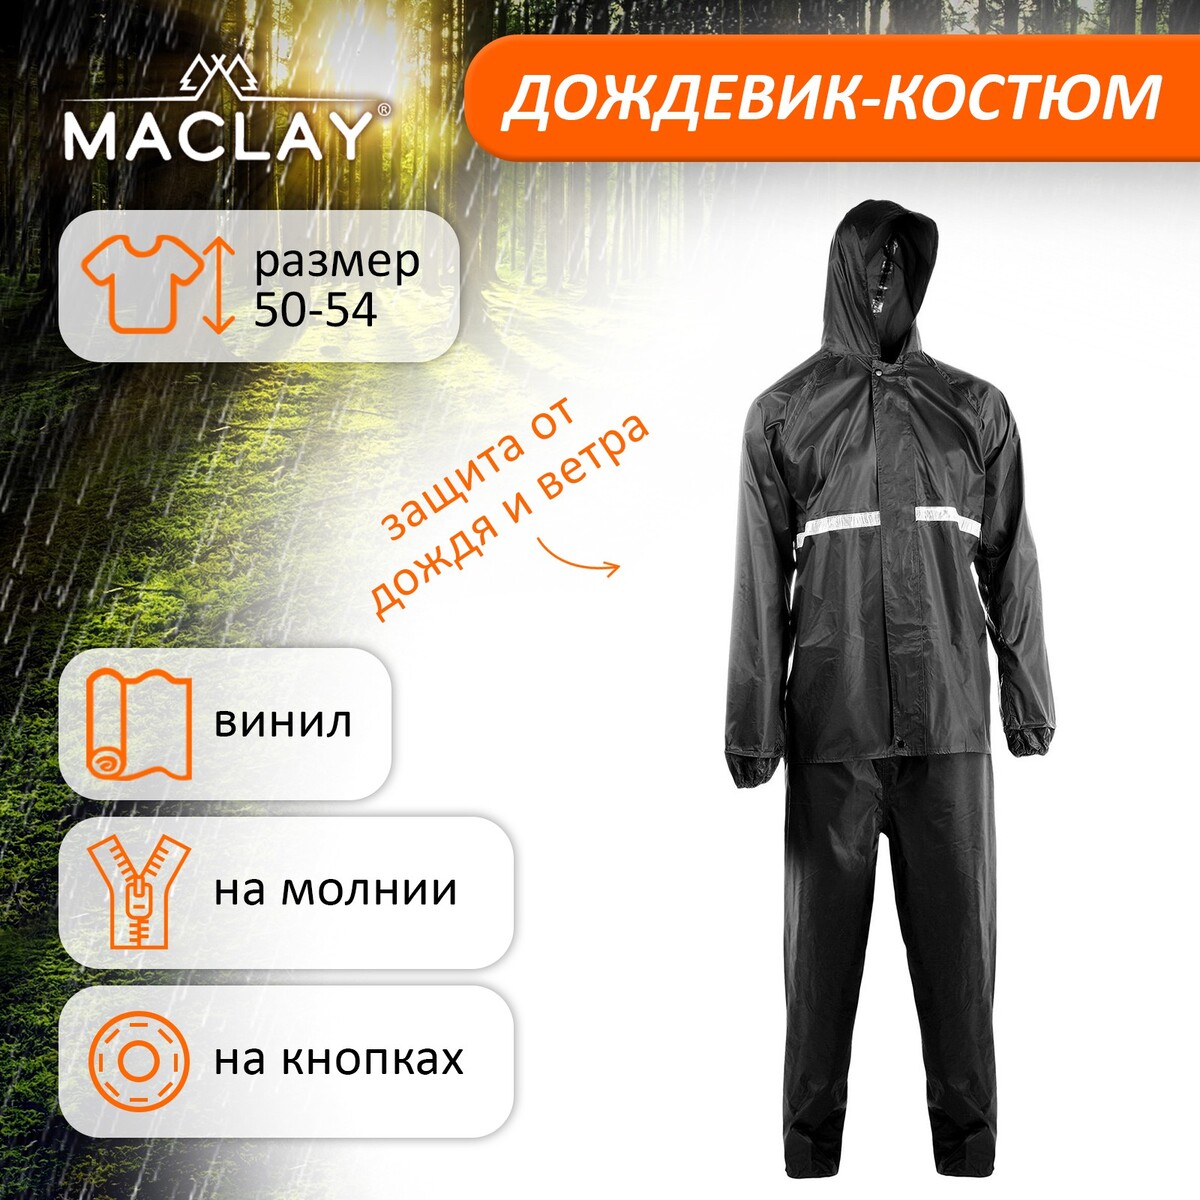 Дождевик-костюм maclay, р. 50-54, цвет черный Maclay